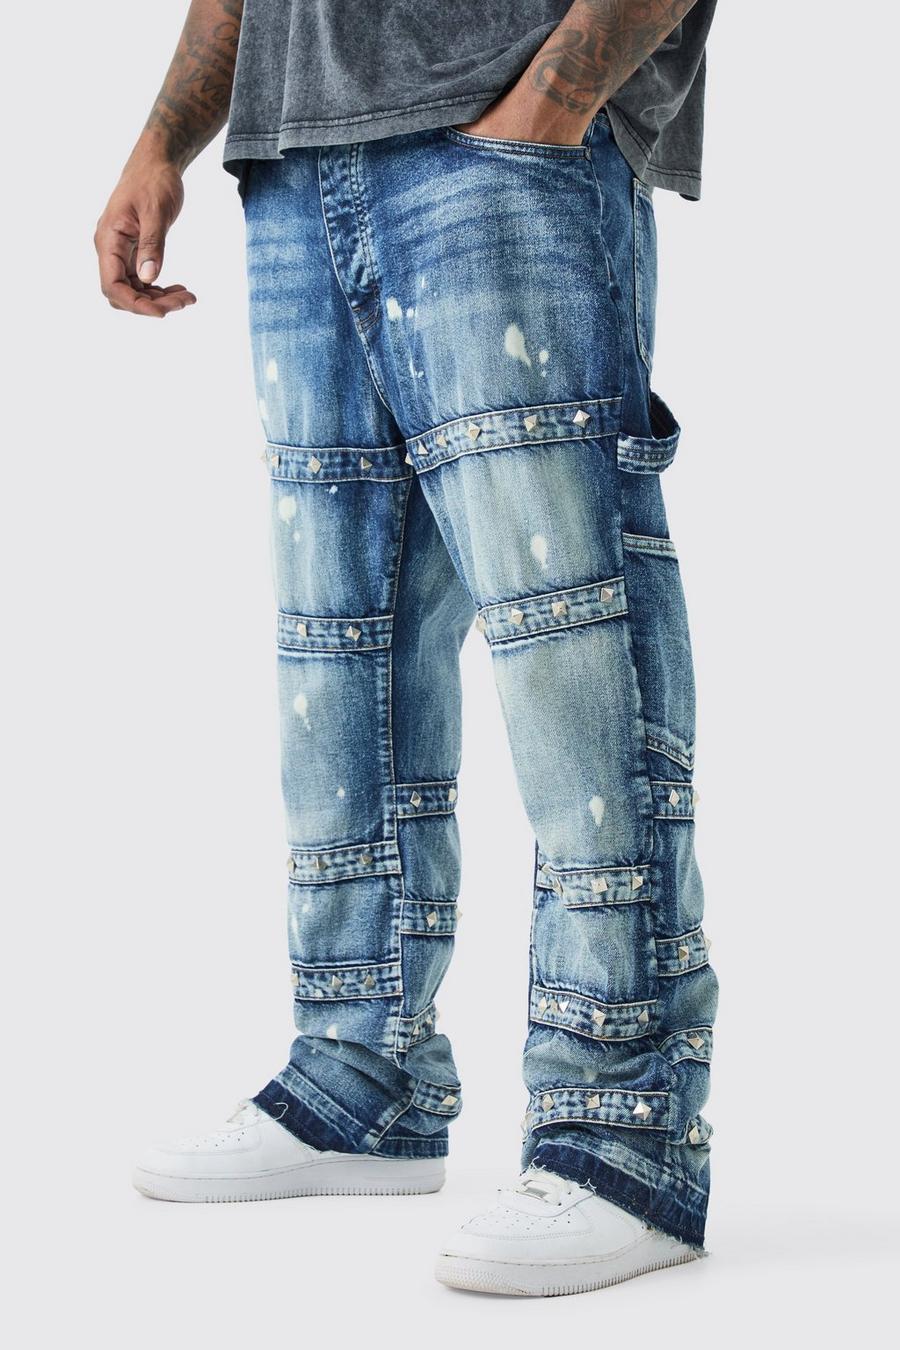 Jeans Plus Size Slim Fit in denim rigido con spalline decorate e dettagli a zampa, Antique blue